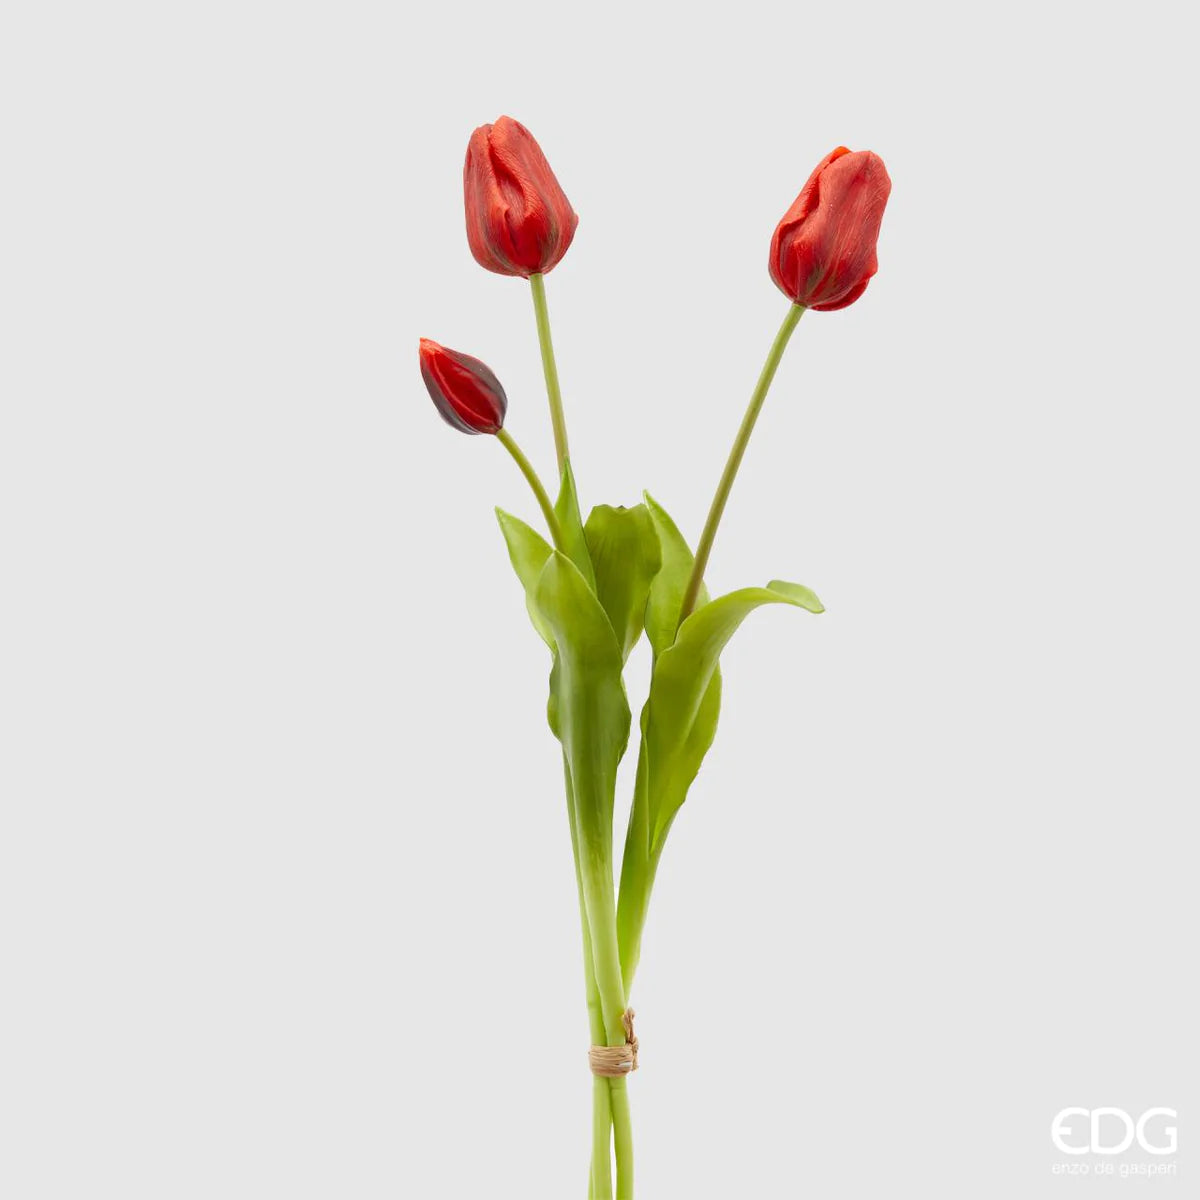 EDG - Mazzo Tulipani Olis 3 Fiori Chiusi (Rosso)